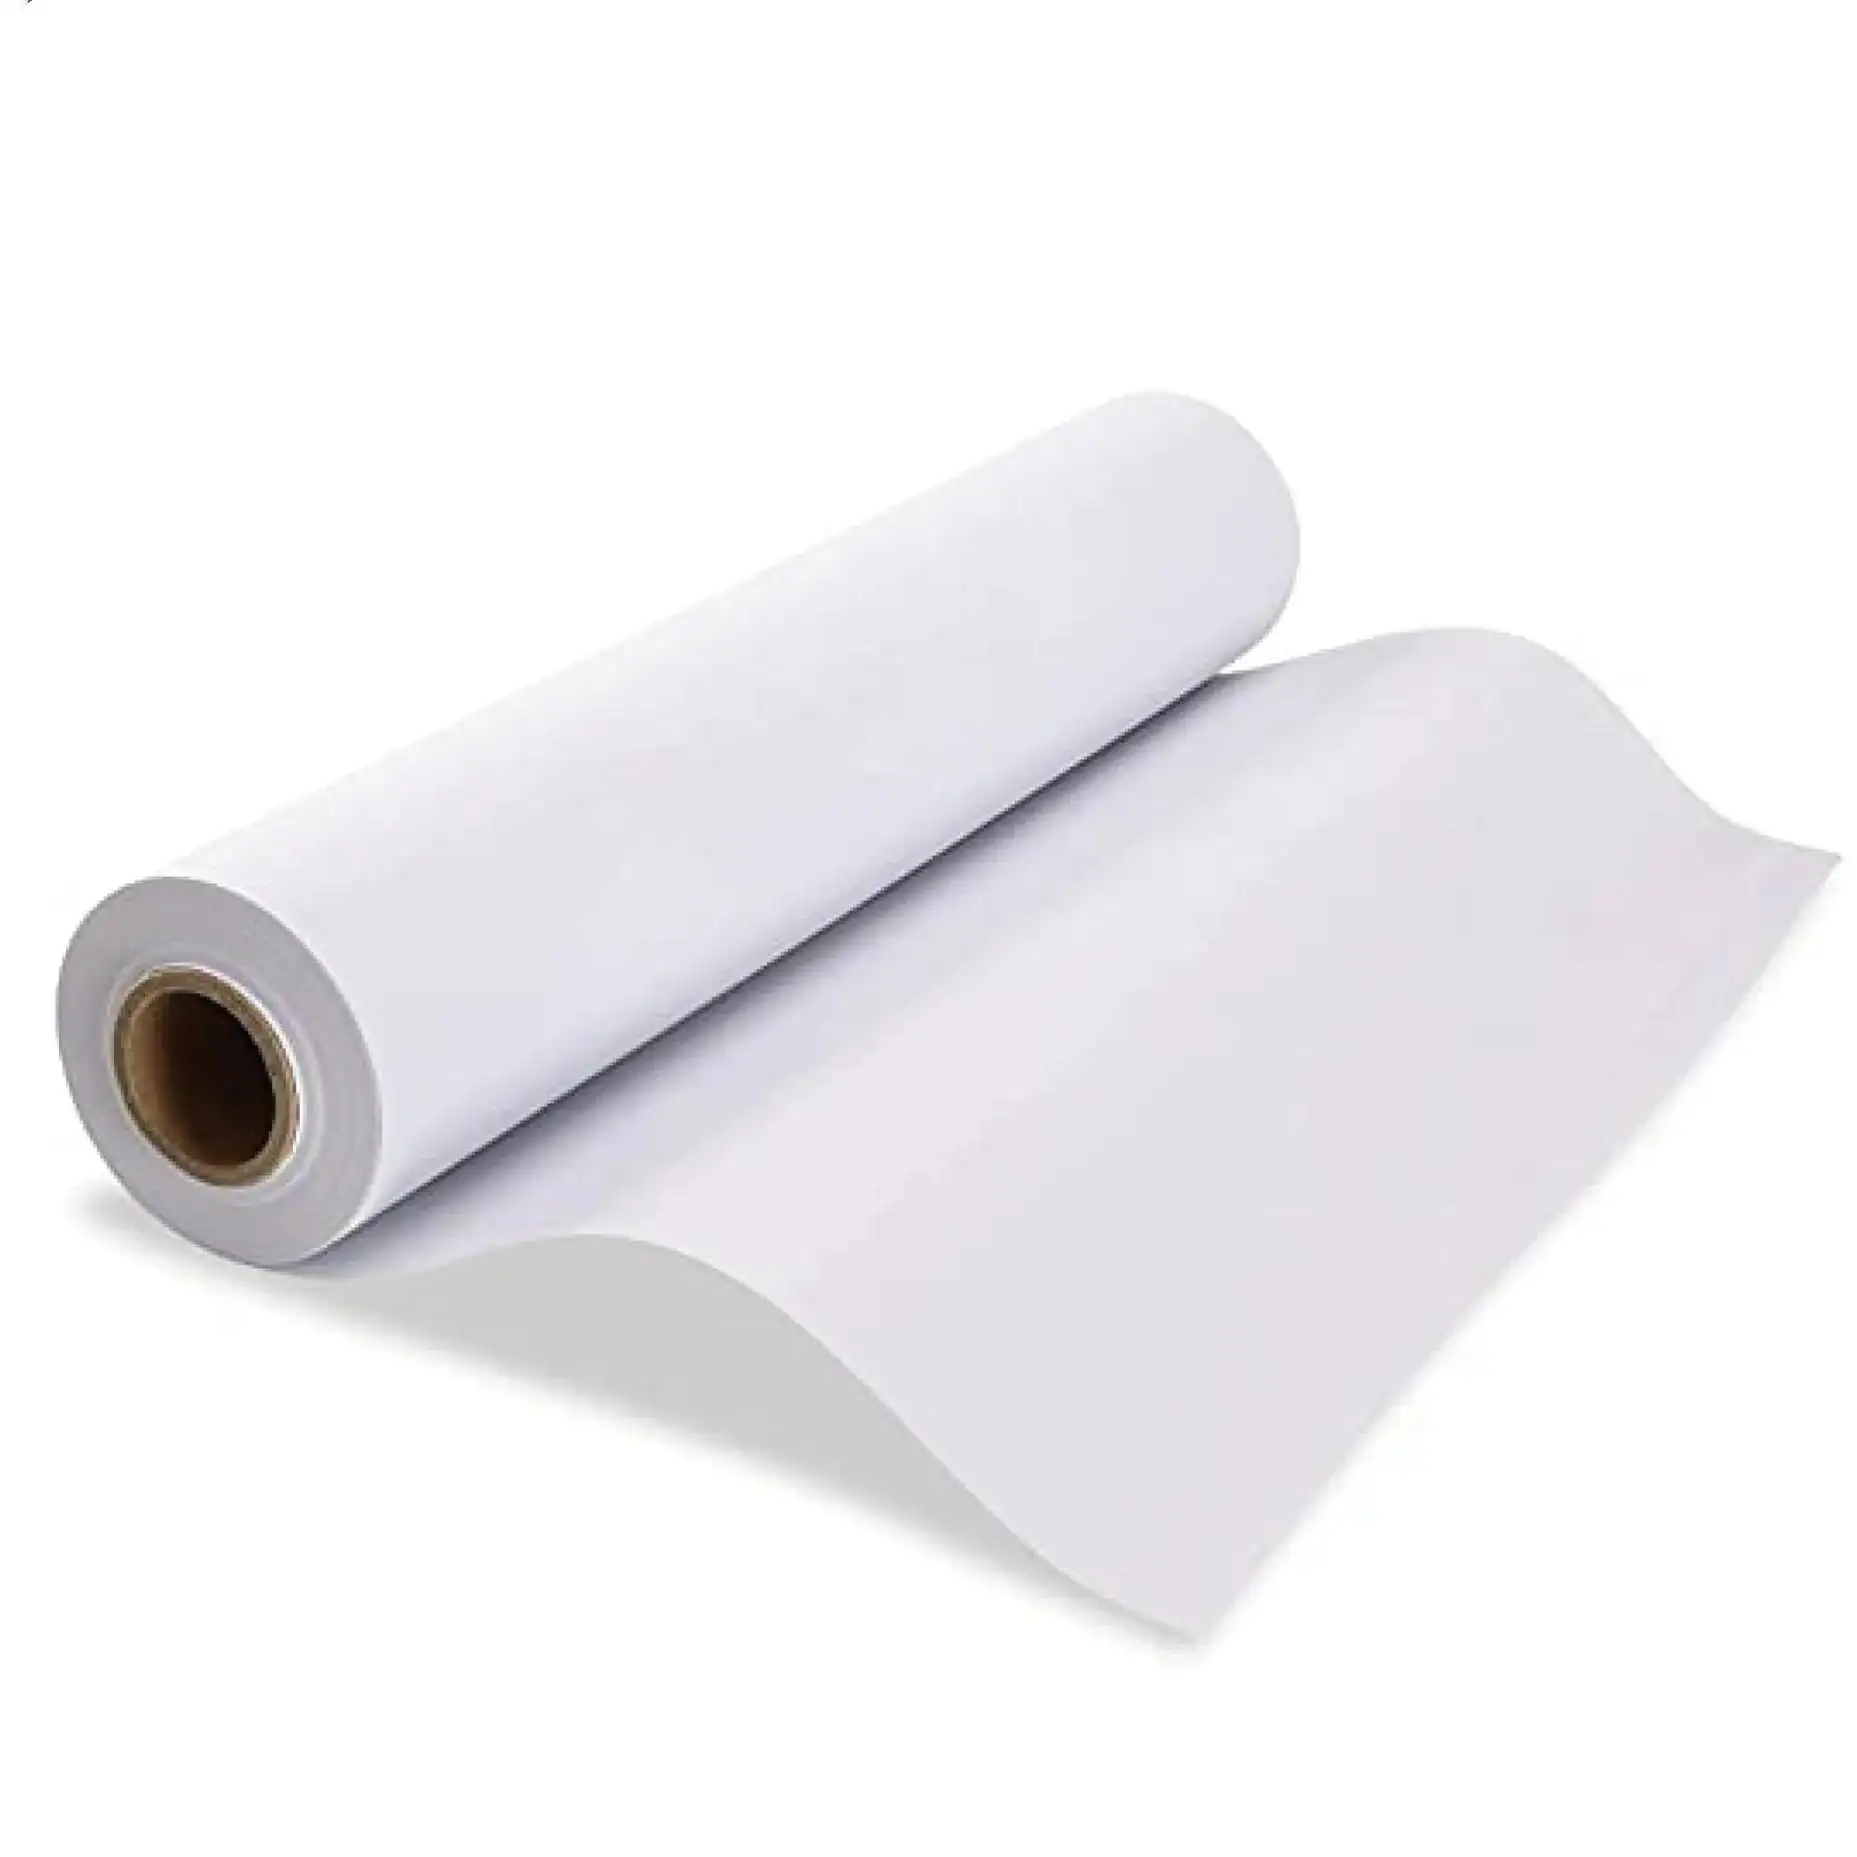 Benutzer definierte Größe Gedrucktes fett dichtes Silikon papier in Lebensmittel qualität Rohmaterial Back papier Rolle Backen von weißem Pergament papier